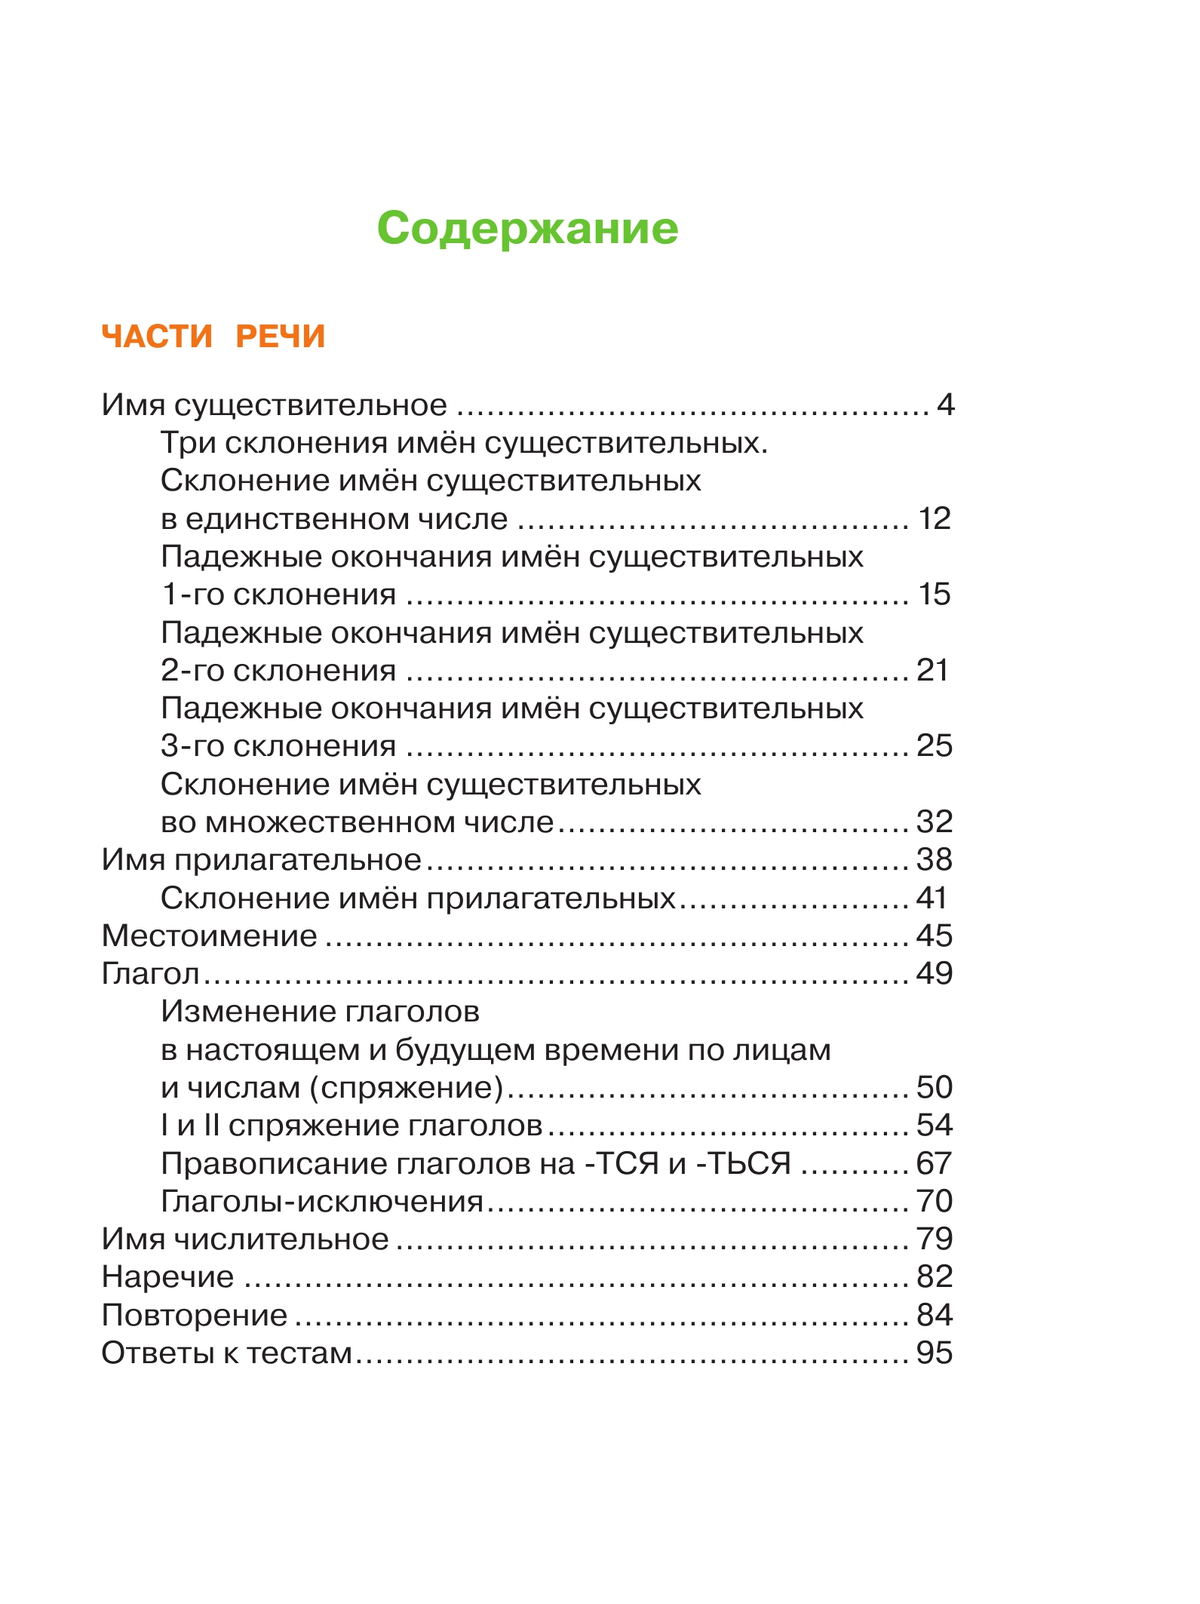 Русский язык. Рабочая тетрадь. 4 класс. В 2 частях. Часть 2 4